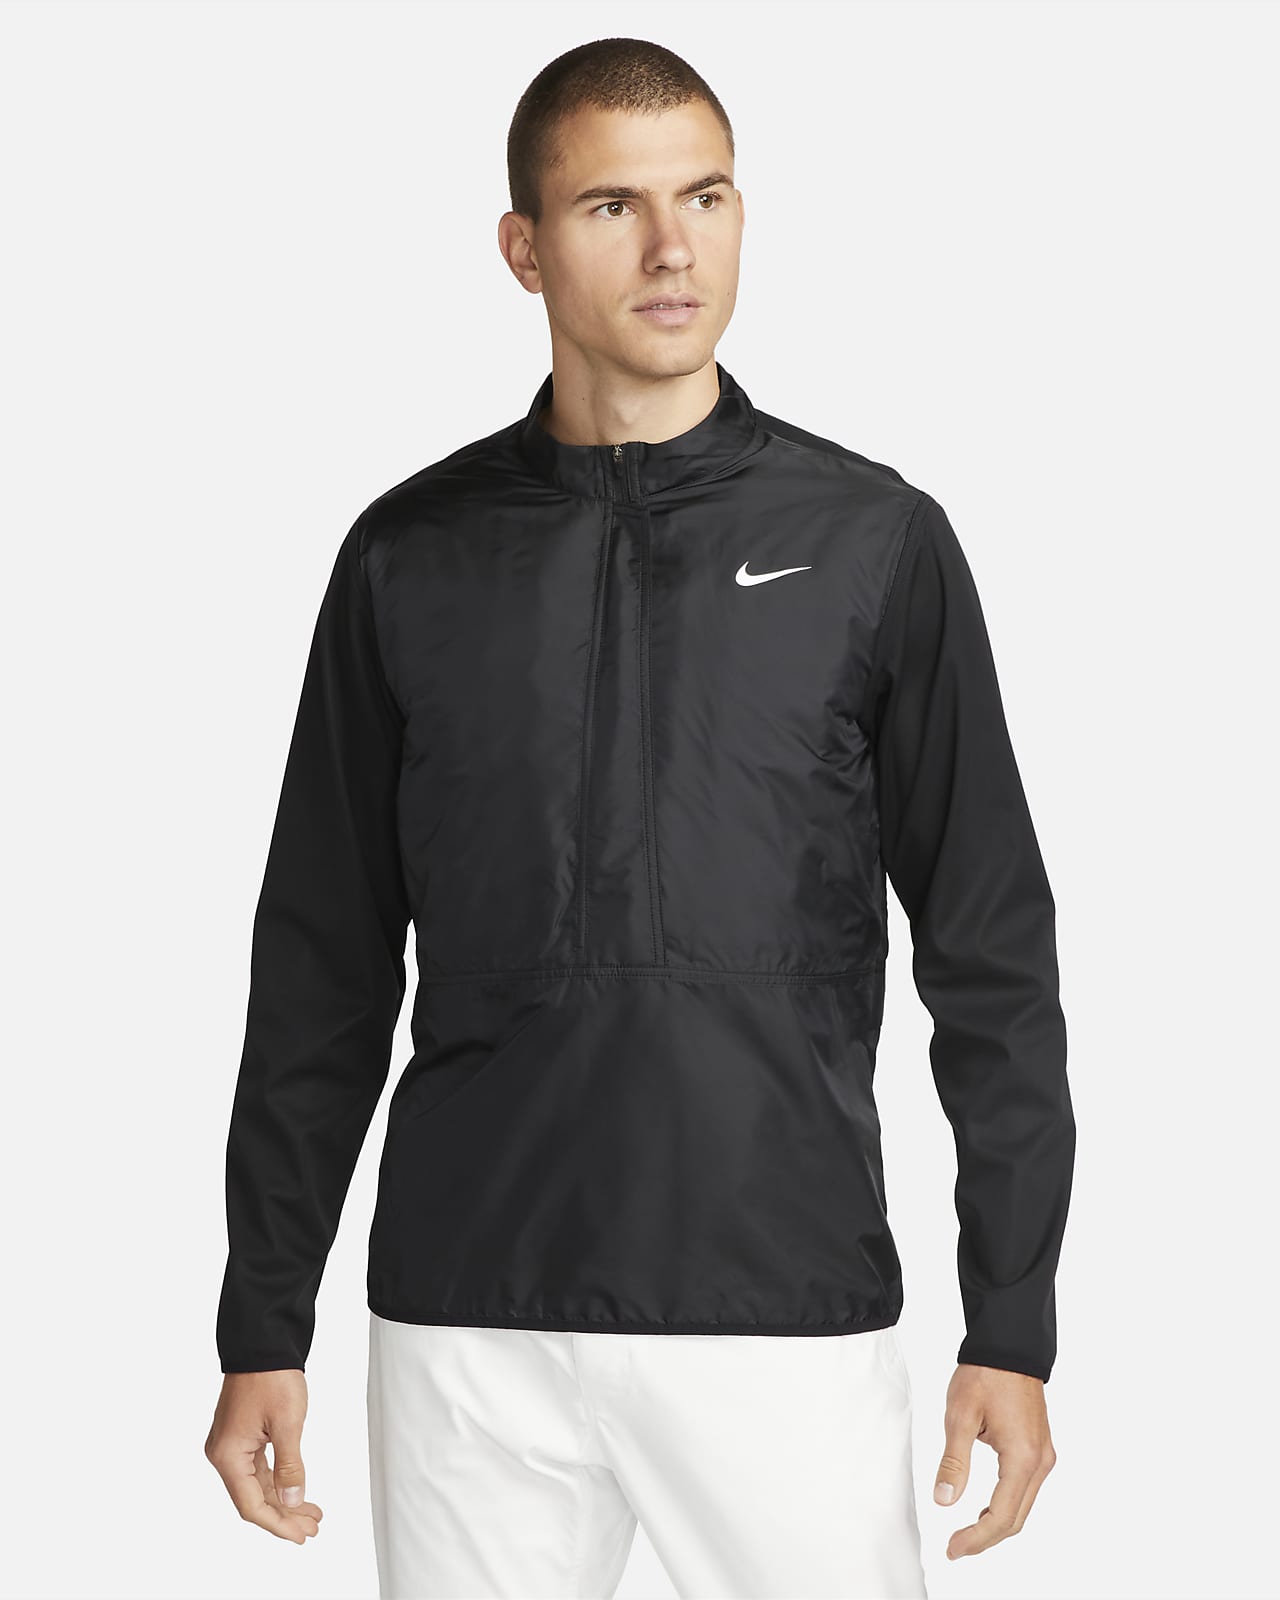 Custom Nike Hooded Soft Shell Jacket | Design Online